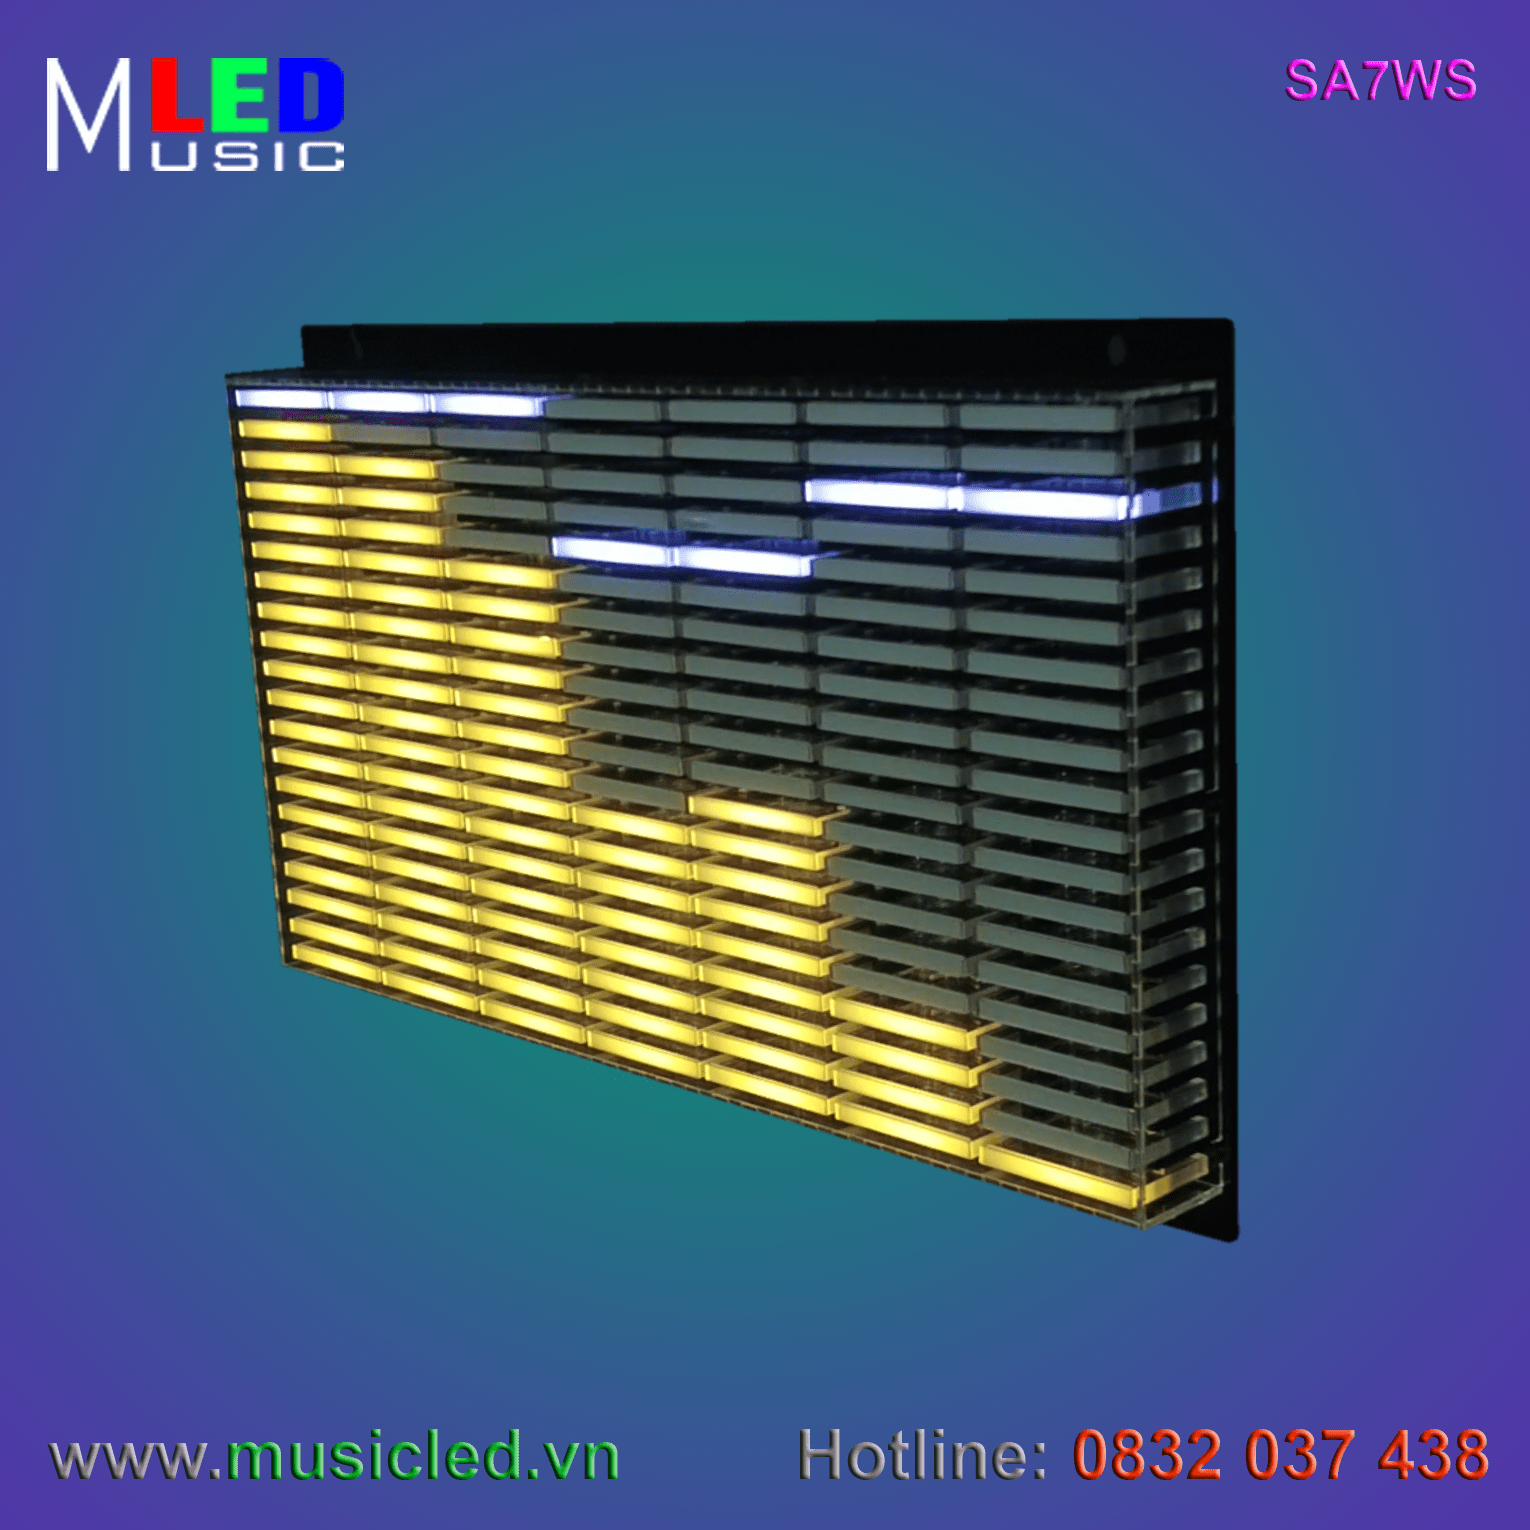 Dàn đèn Music LED nháy theo tần số nhạc 7 cột treo tường (SA7WS)